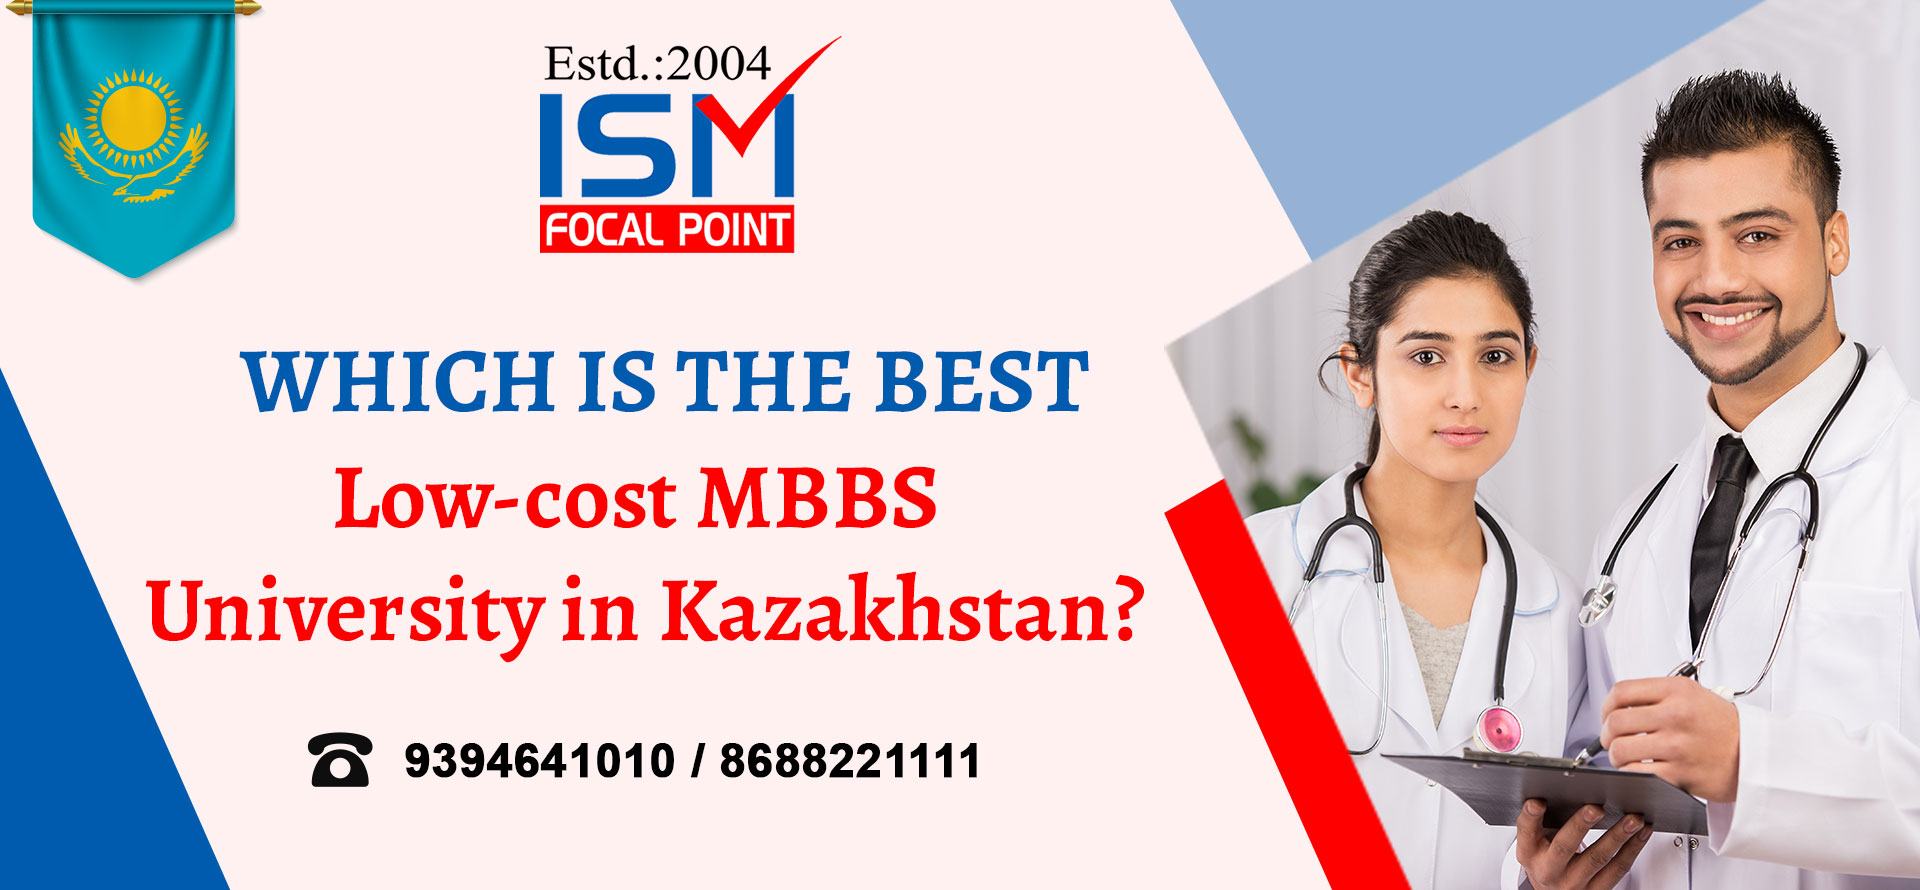 Best Low-cost MBBS University in Kazakhstan